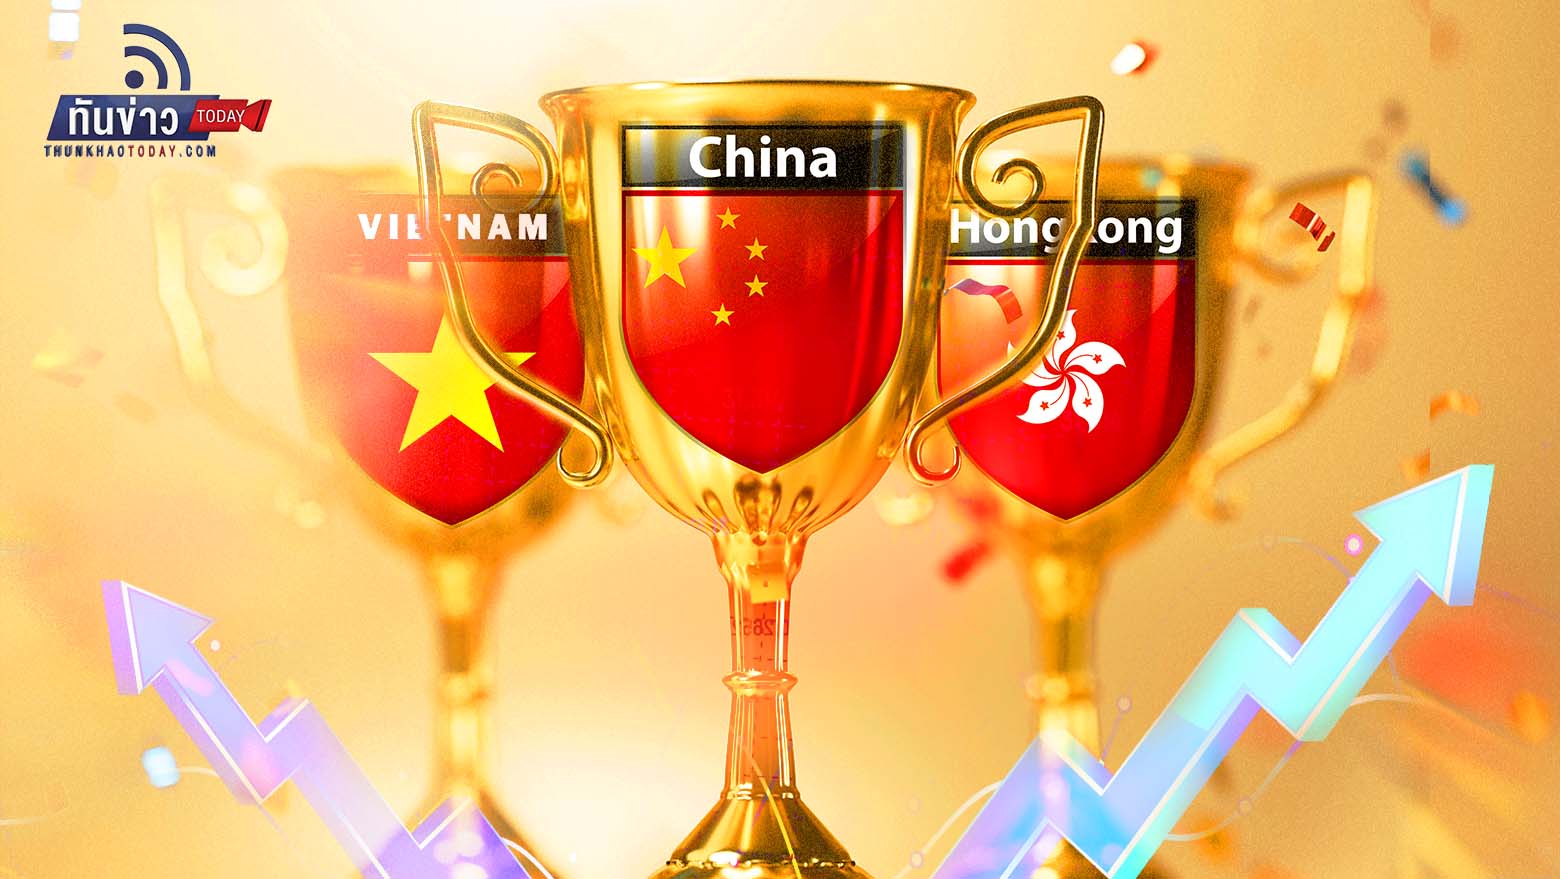 ปี 2566 จับตา! หุ้นจีน-ฮ่องกง-เวียดนาม ดาวเด่นในครึ่งปีแรก หุ้นสหรัฐฯ -ทองคำ-บิทคอยน์ ราคาพุ่งในครึ่งปีหลัง